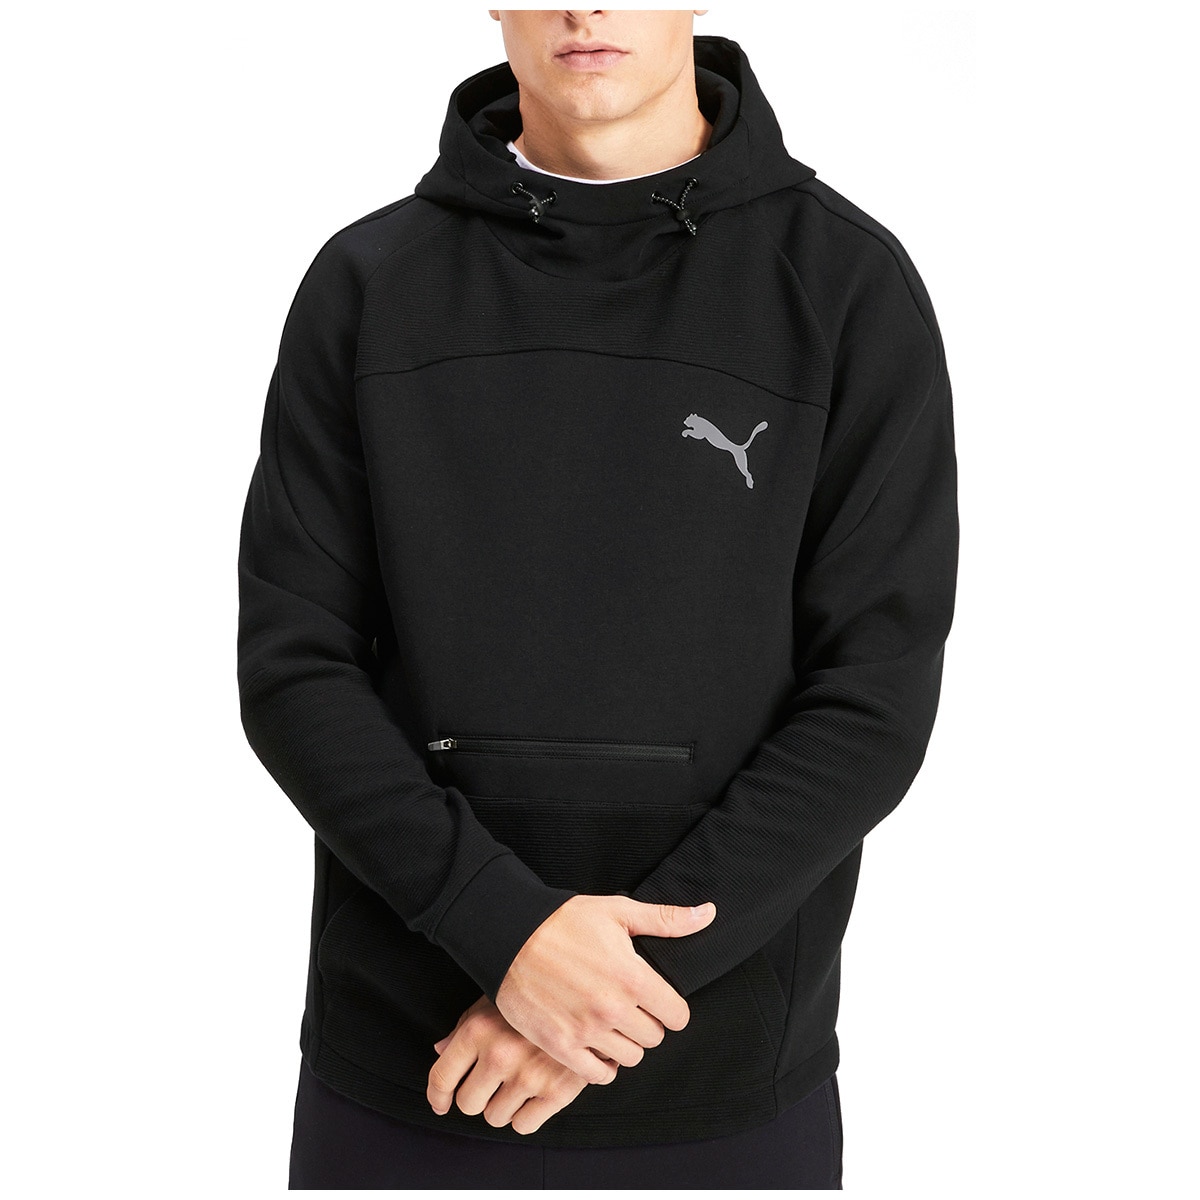 Puma Evostripe hoodie - Puma Black